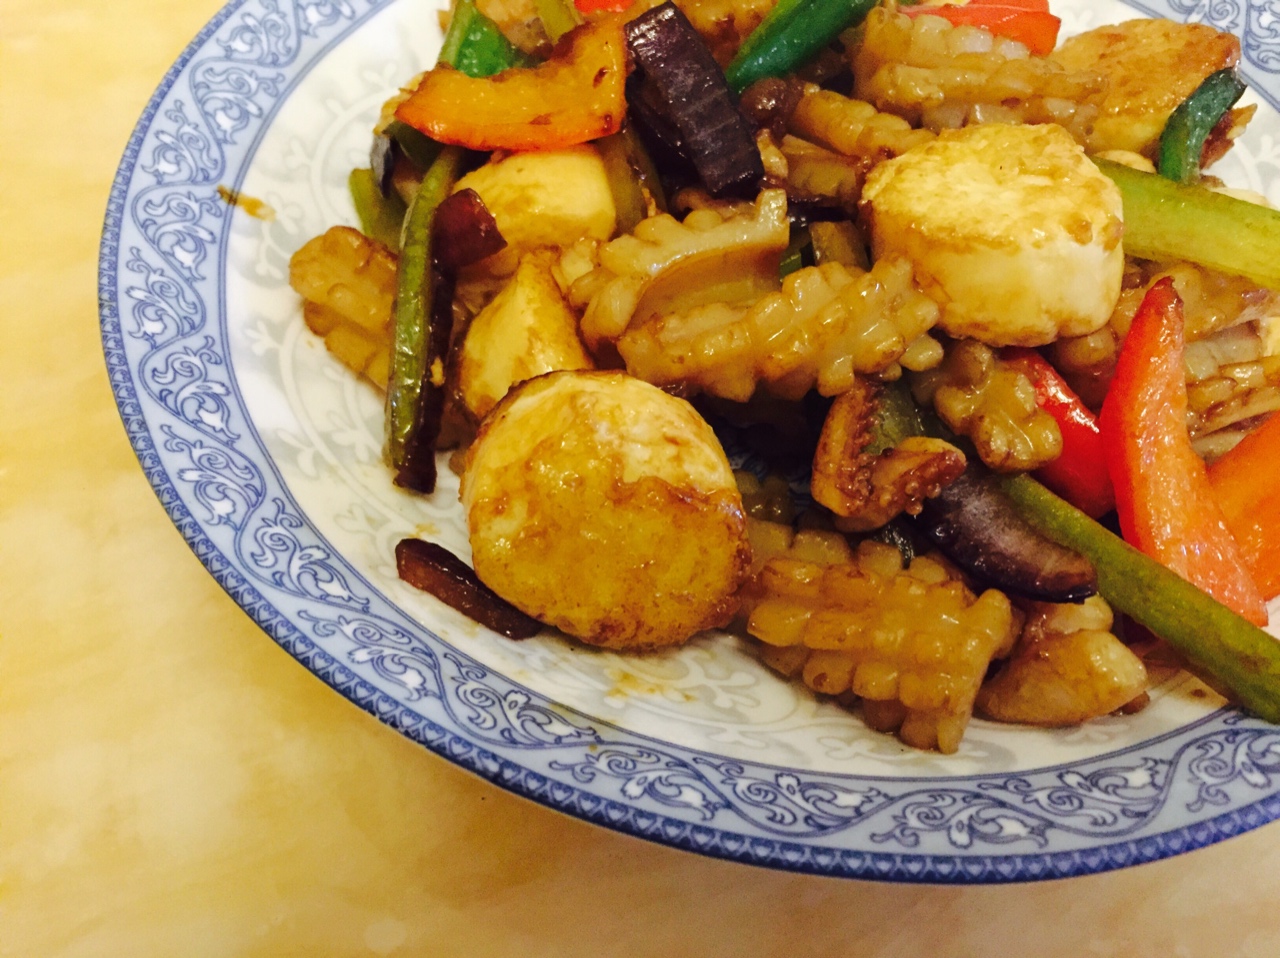 铁板海鲜日本豆腐 Seafood with Japanese Dofu